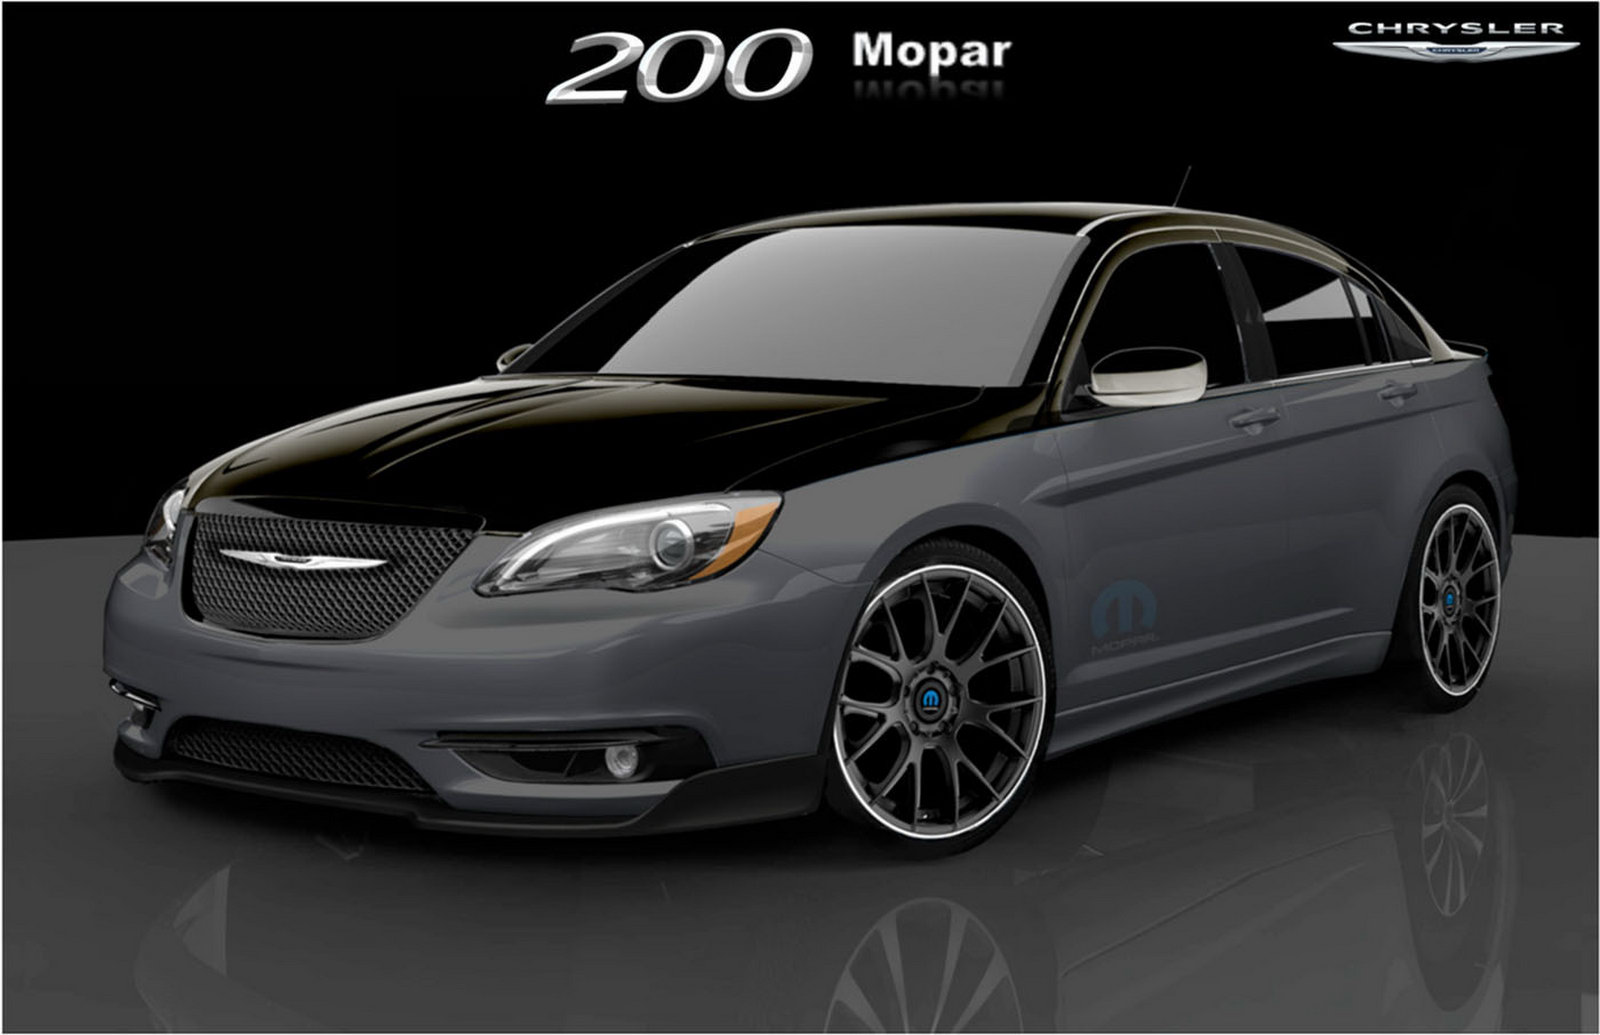 2011 Chrysler 200 Super S by Mopar